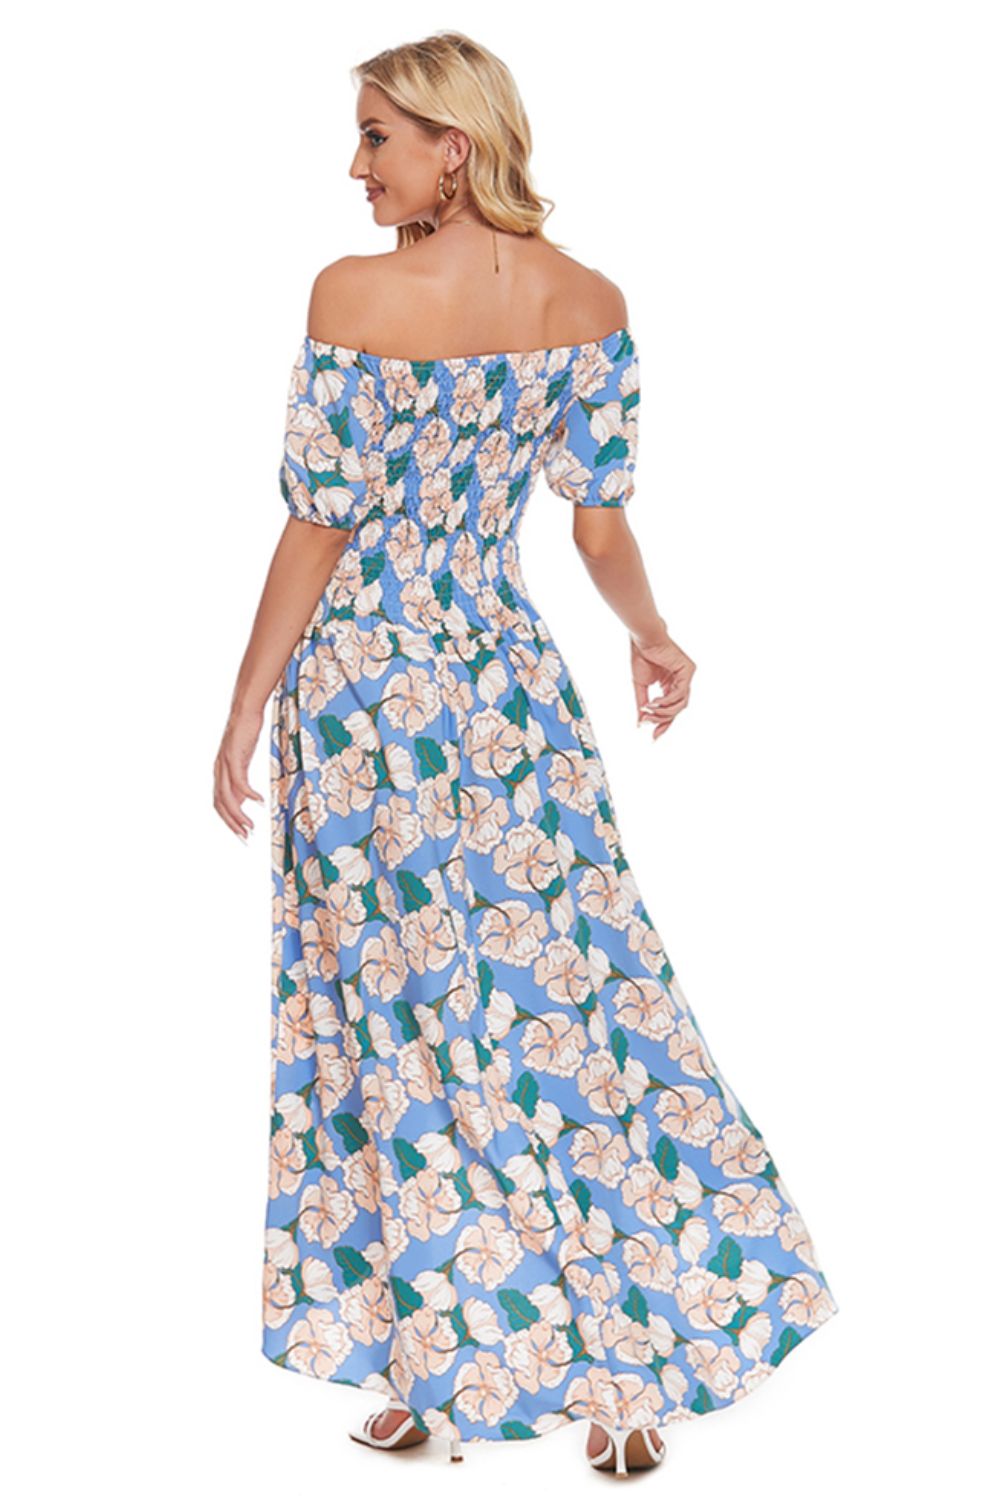 Summer Beach Floral Maxi Dress for Women - Off-Shoulder Slit Wedding Guest Attire